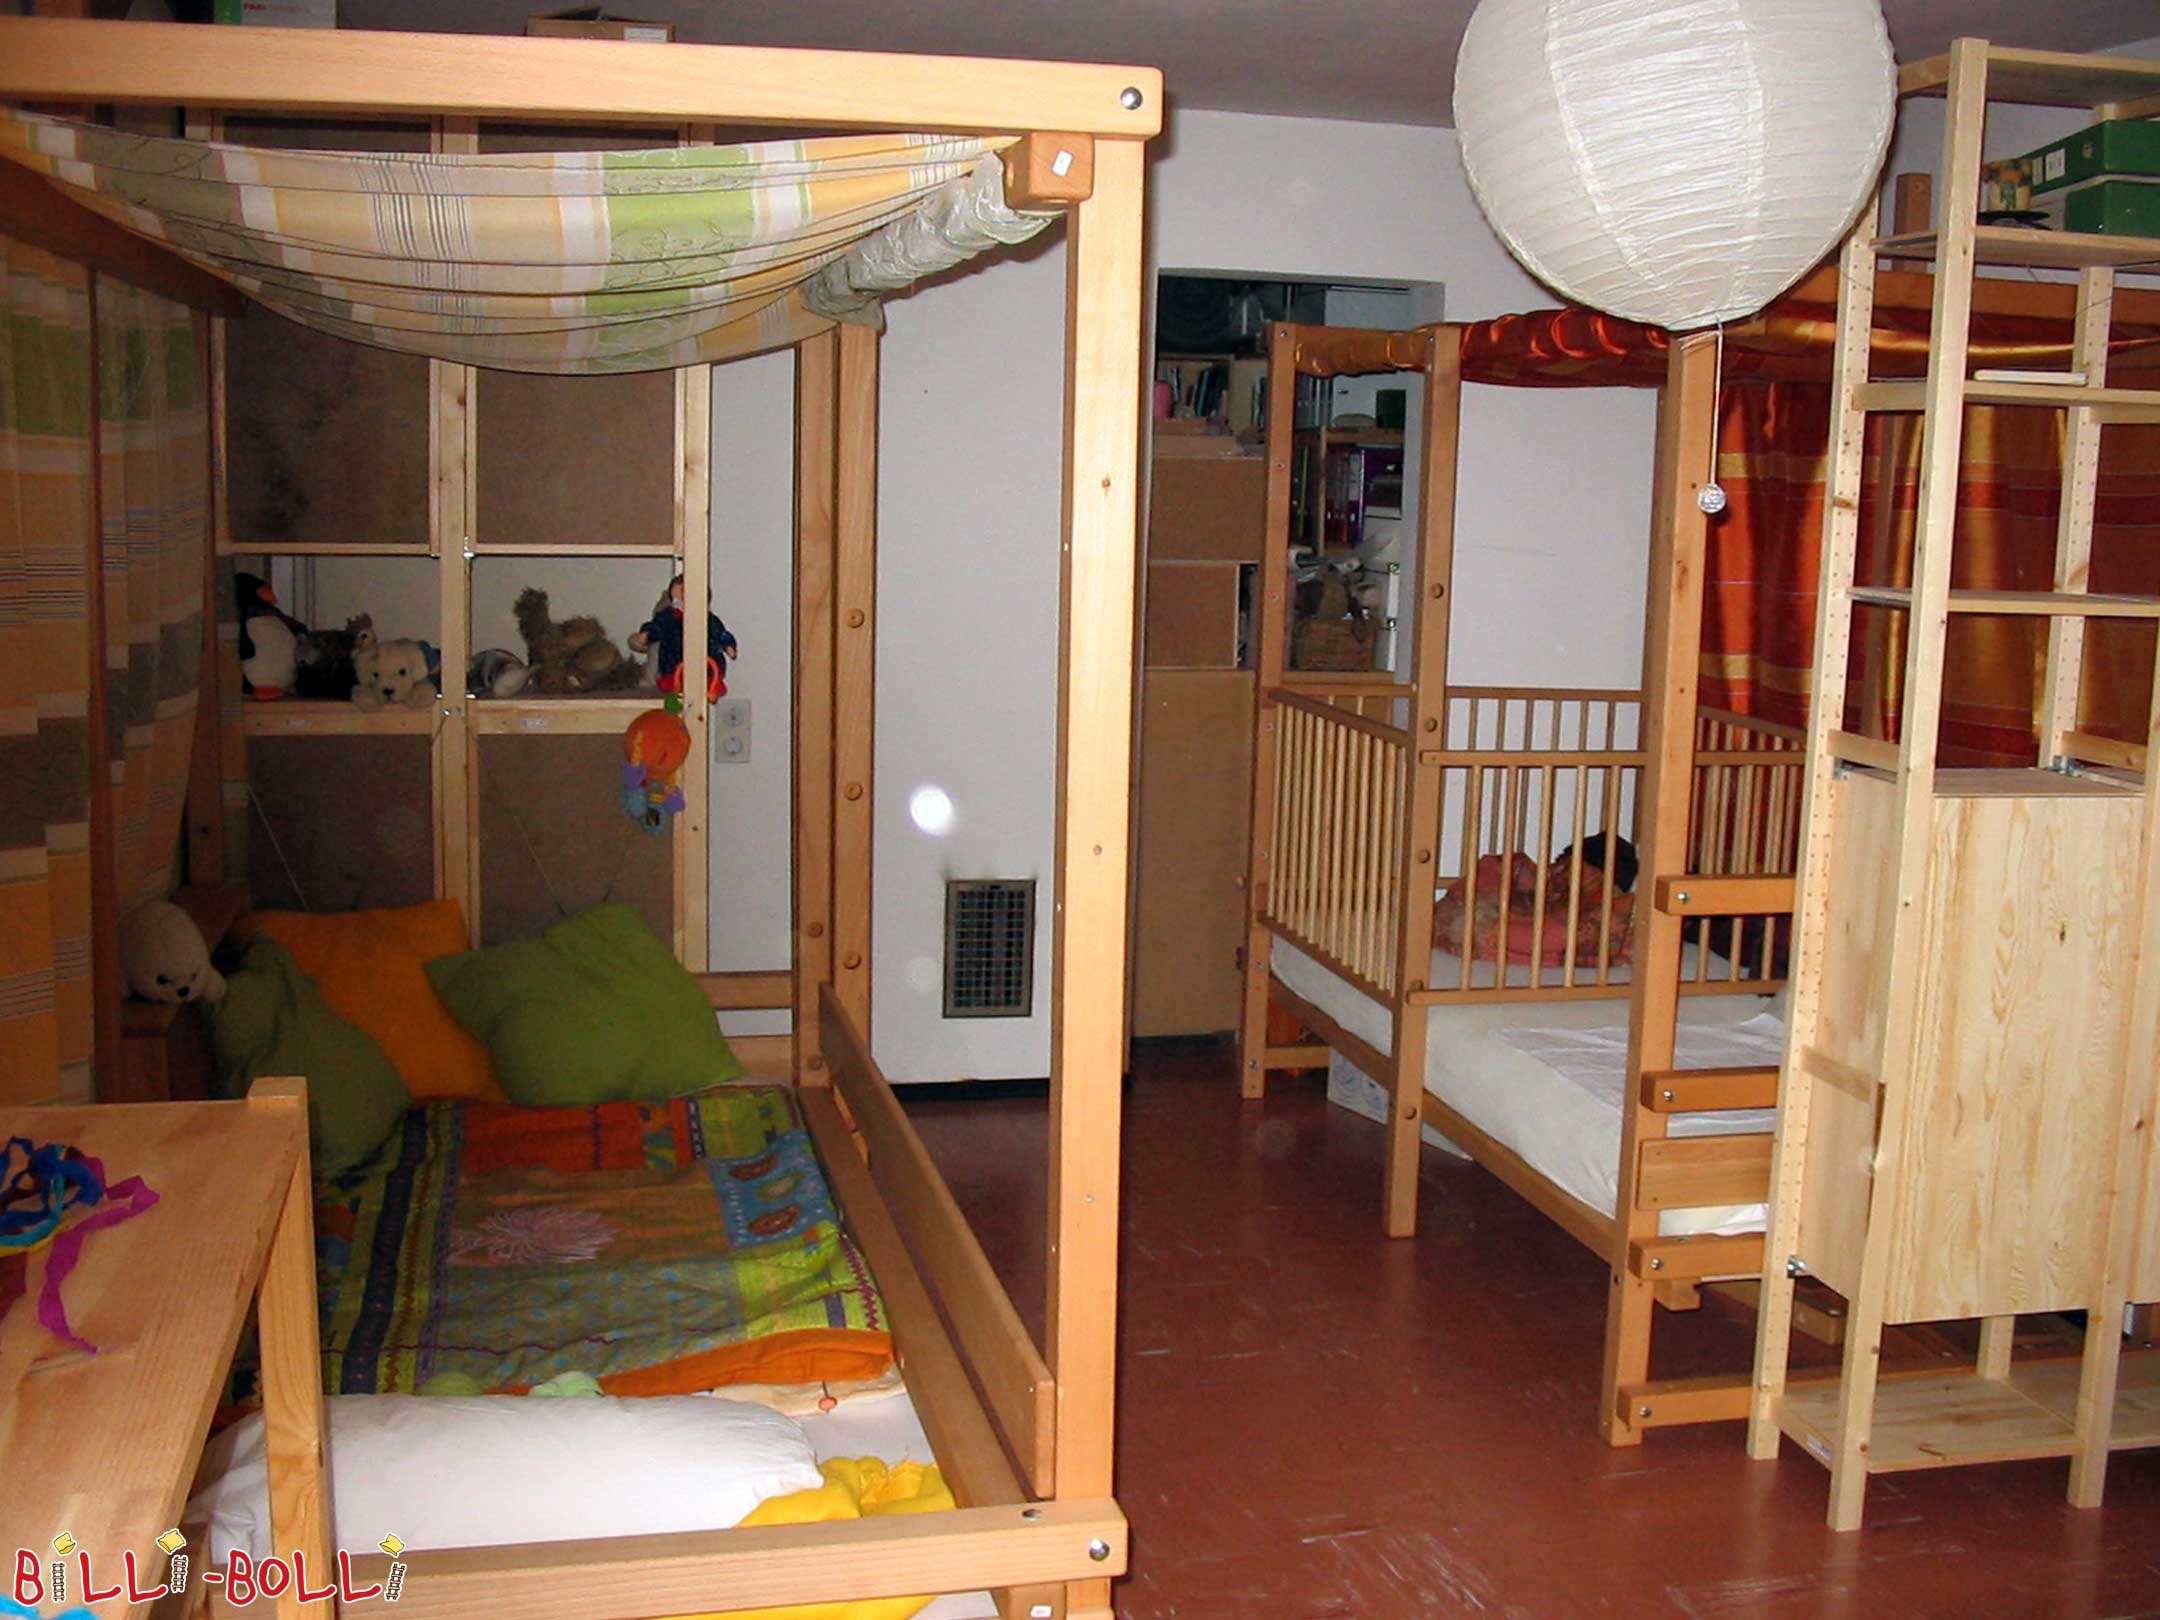 Deux lits mezzanines ajustables selon l’âge montés à hauteur 2 avec lit … (Lit mezzanine ajustable selon l’âge)